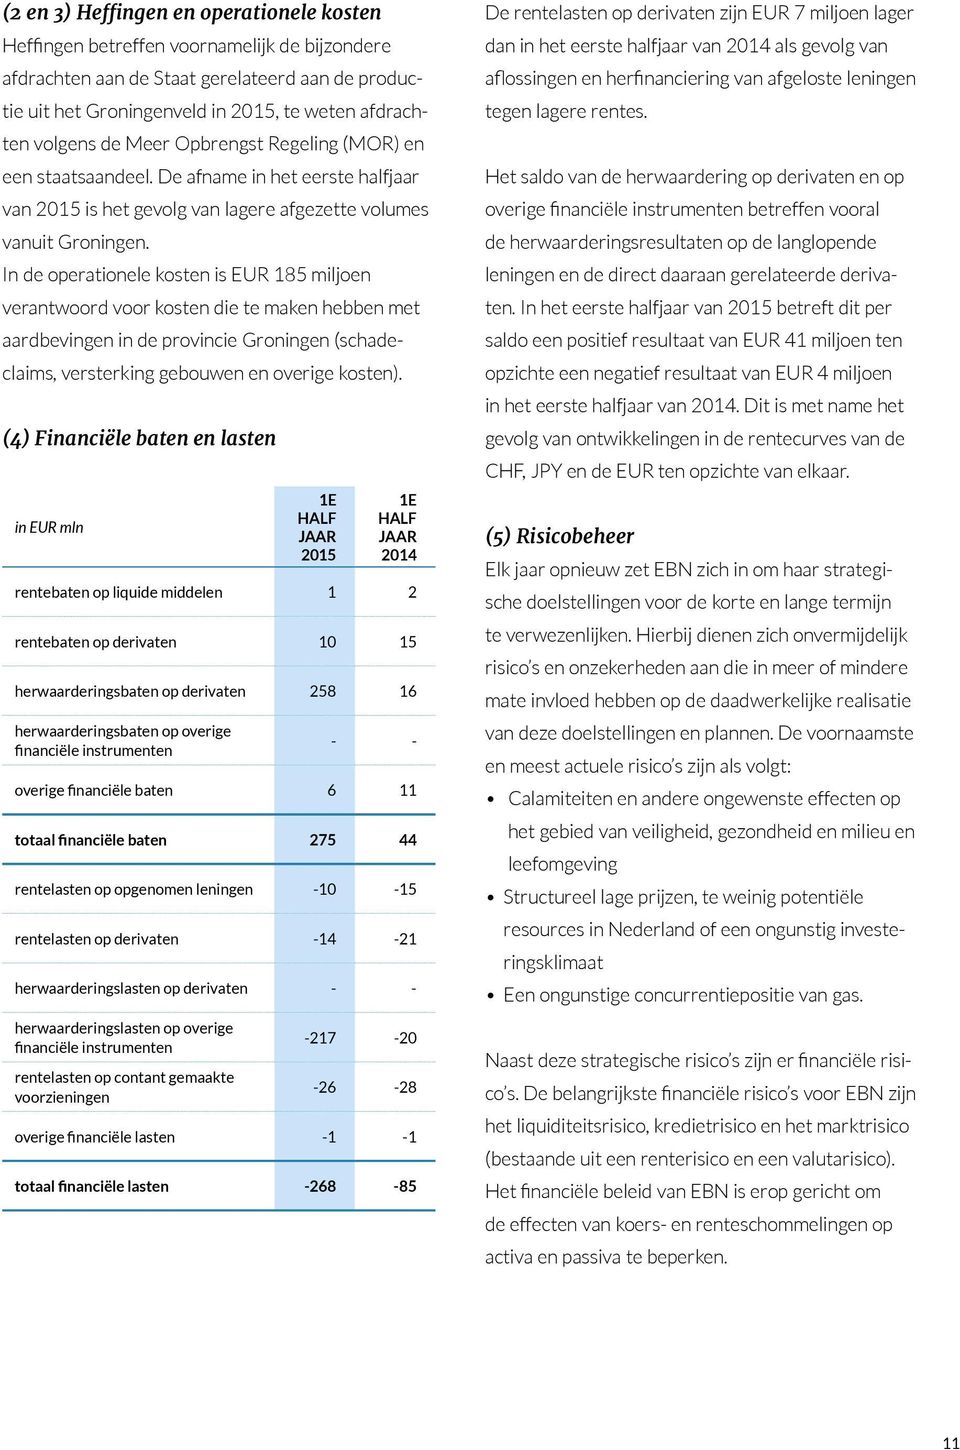 In de operationele kosten is EUR 185 miljoen verantwoord voor kosten die te maken hebben met aardbevingen in de provincie Groningen (schadeclaims, versterking gebouwen en overige kosten).